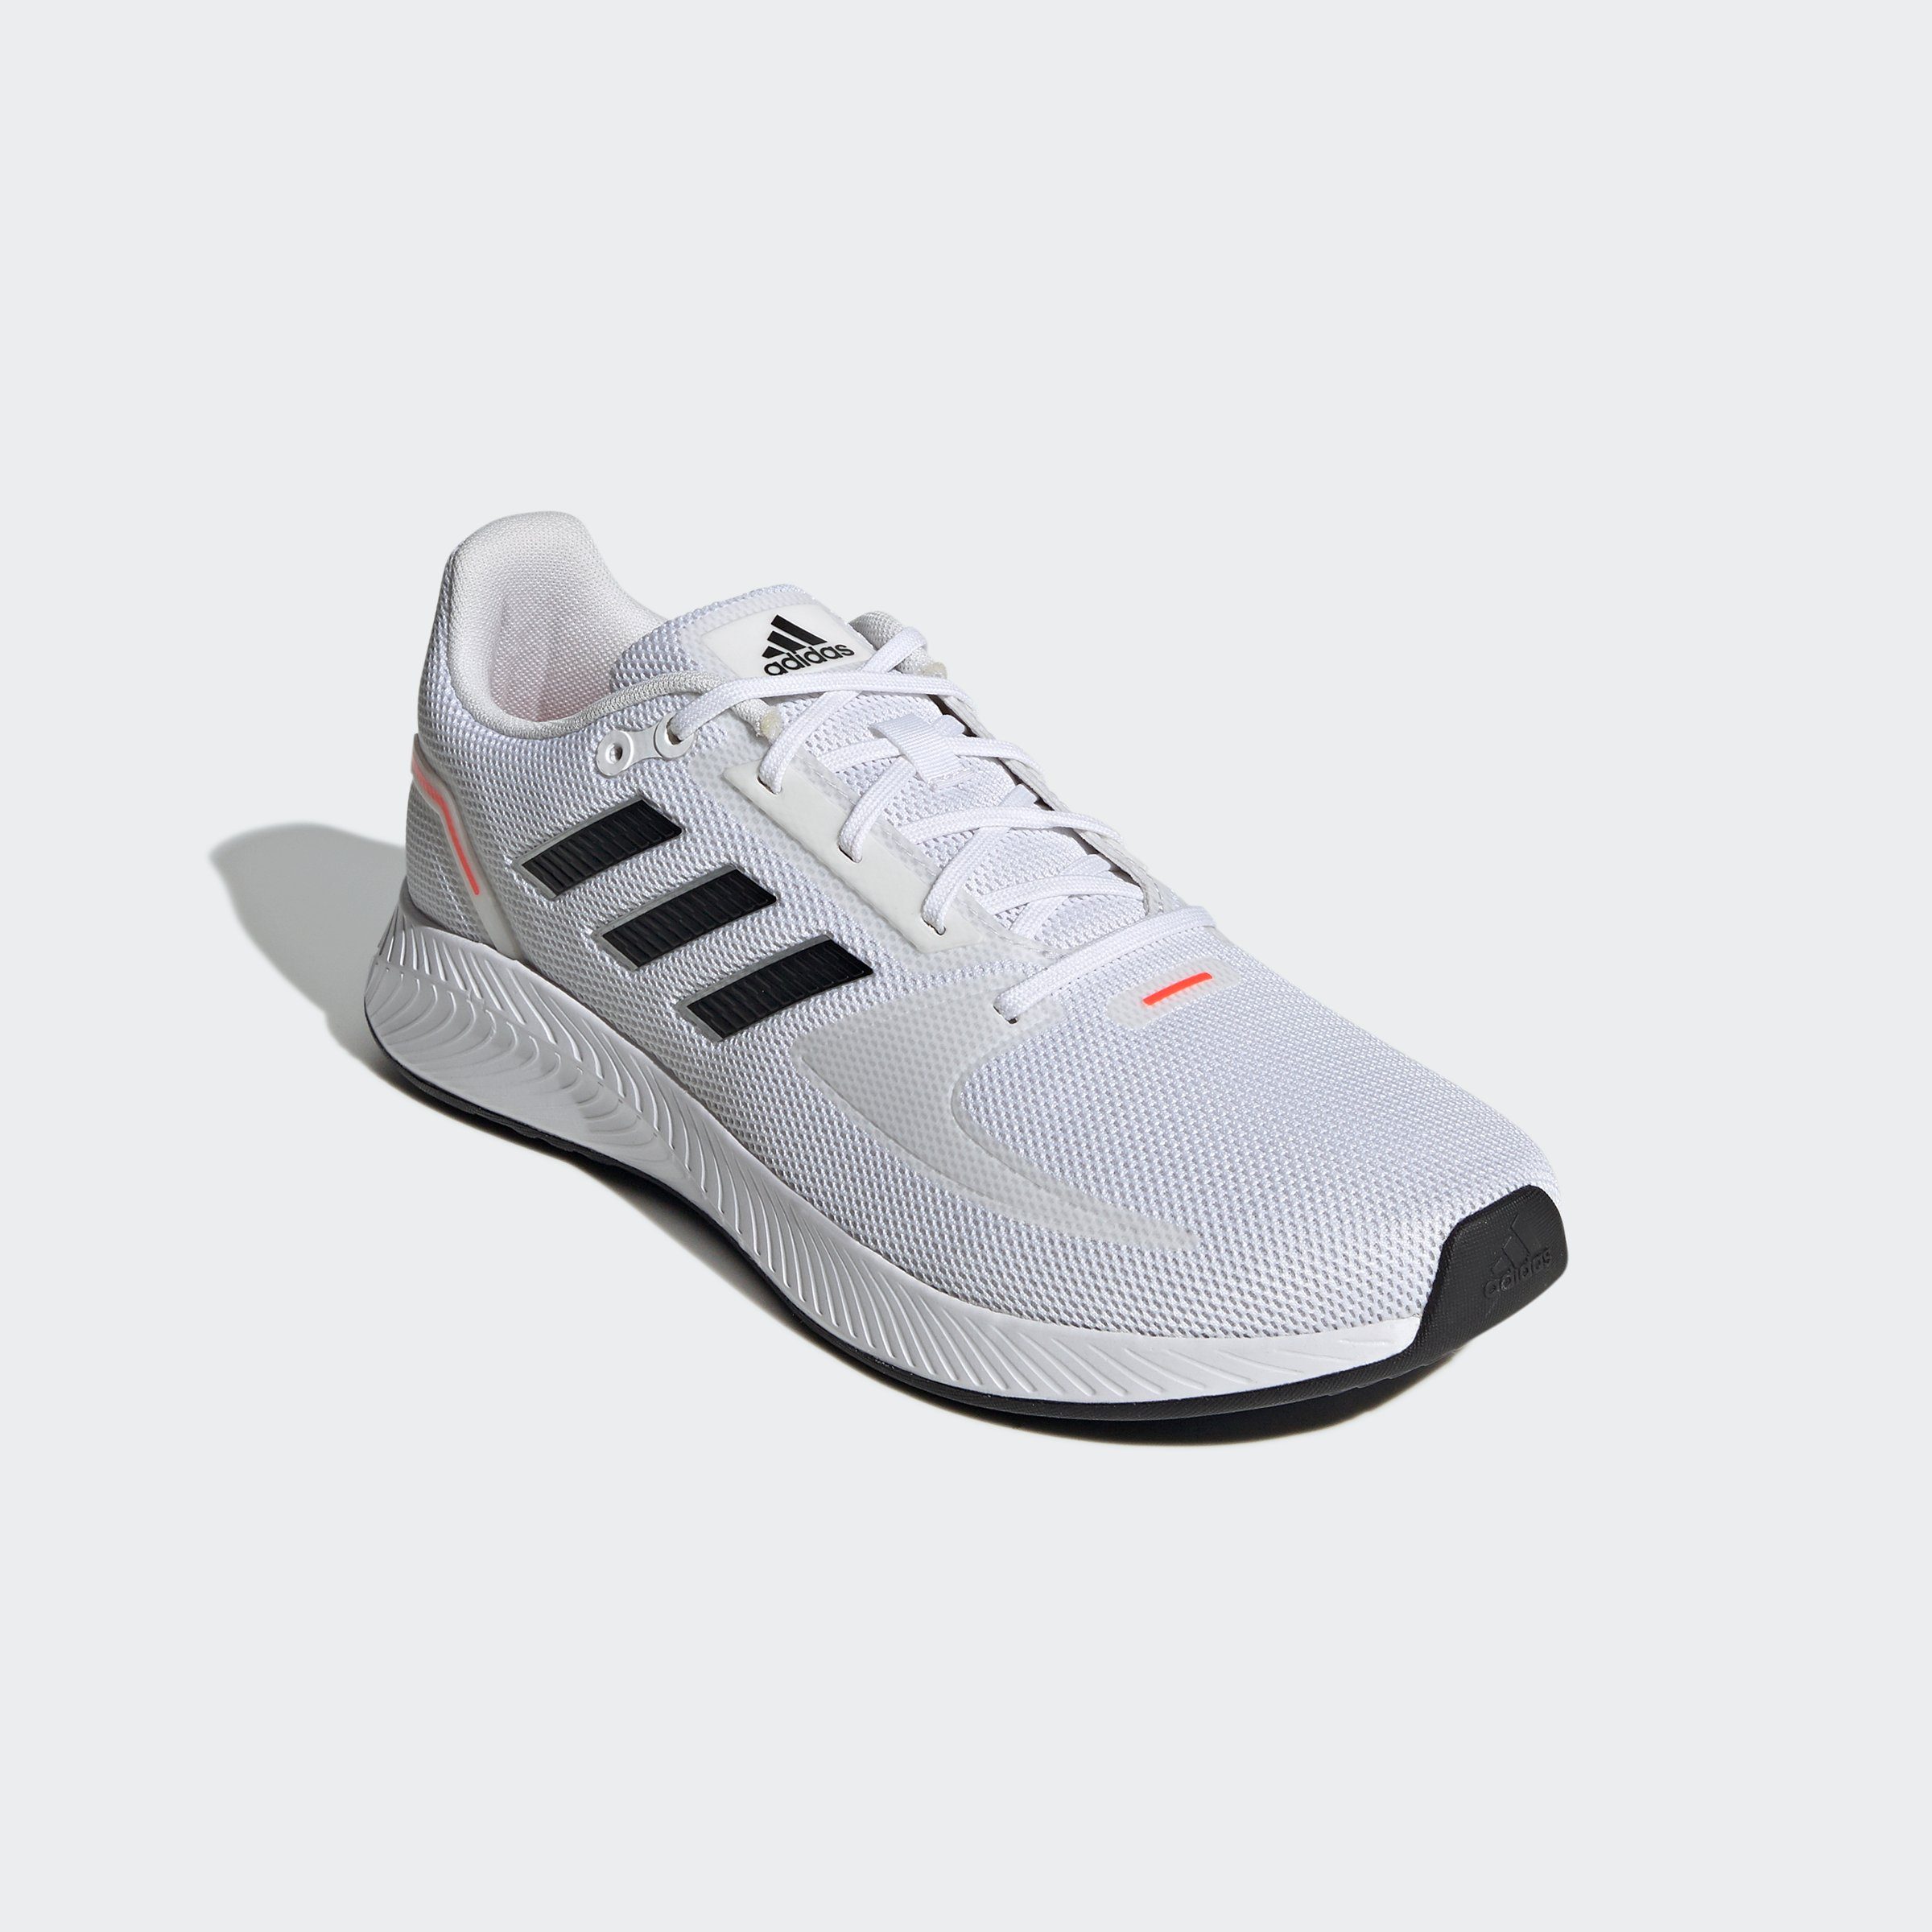 Weiße adidas Herren Schuhe online kaufen | OTTO